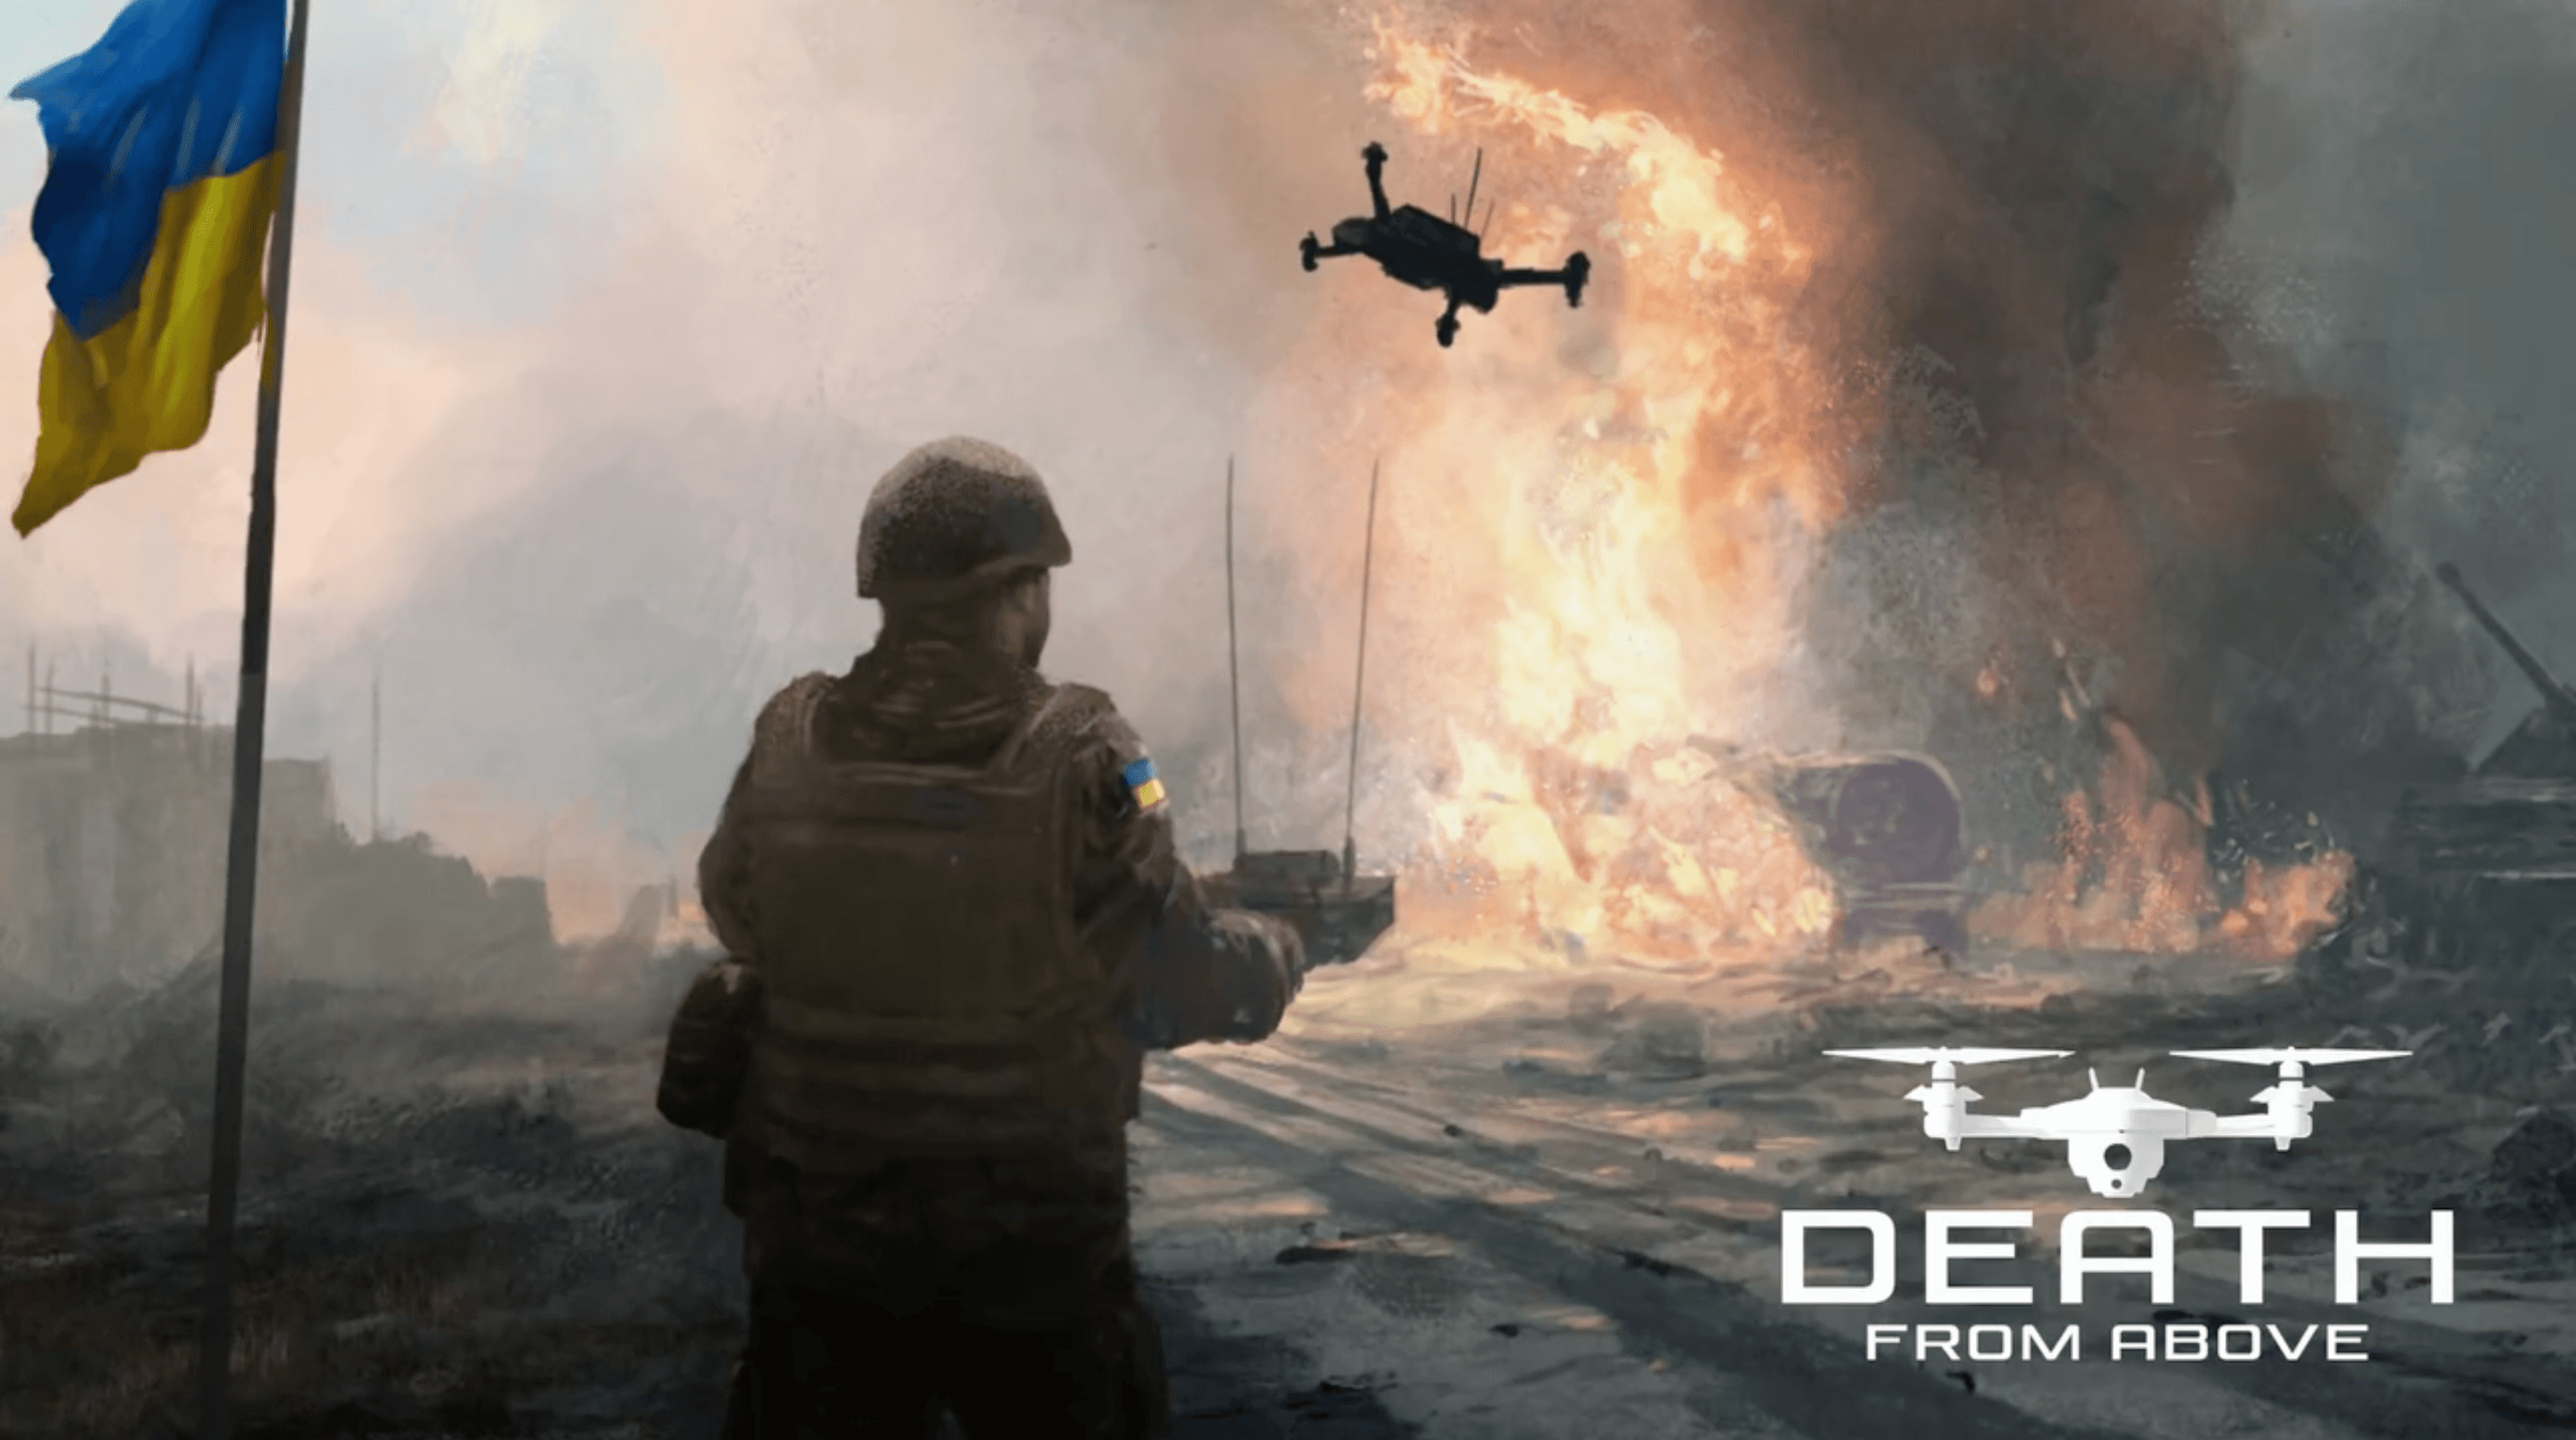 Lesser Evil startet Kickstarter für Drohnen-Sim "Death From Above"